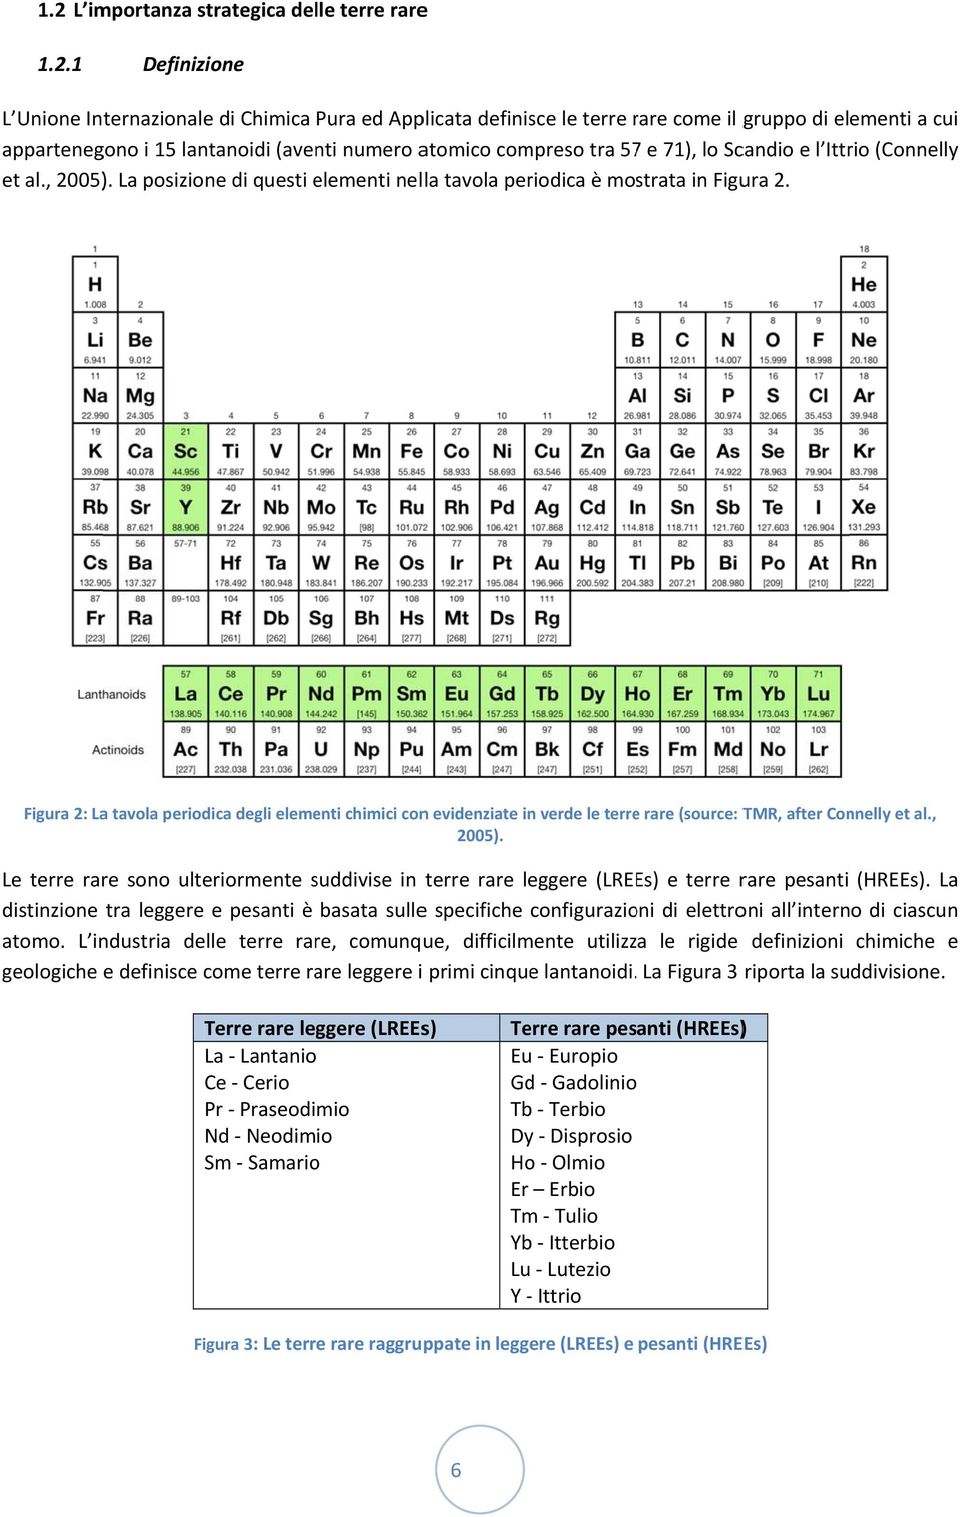 Figura 2: La tavola periodica degli elementi chimici conn evidenziate in verde le terree rare (source: TMR, after Connelly et al., 2005).